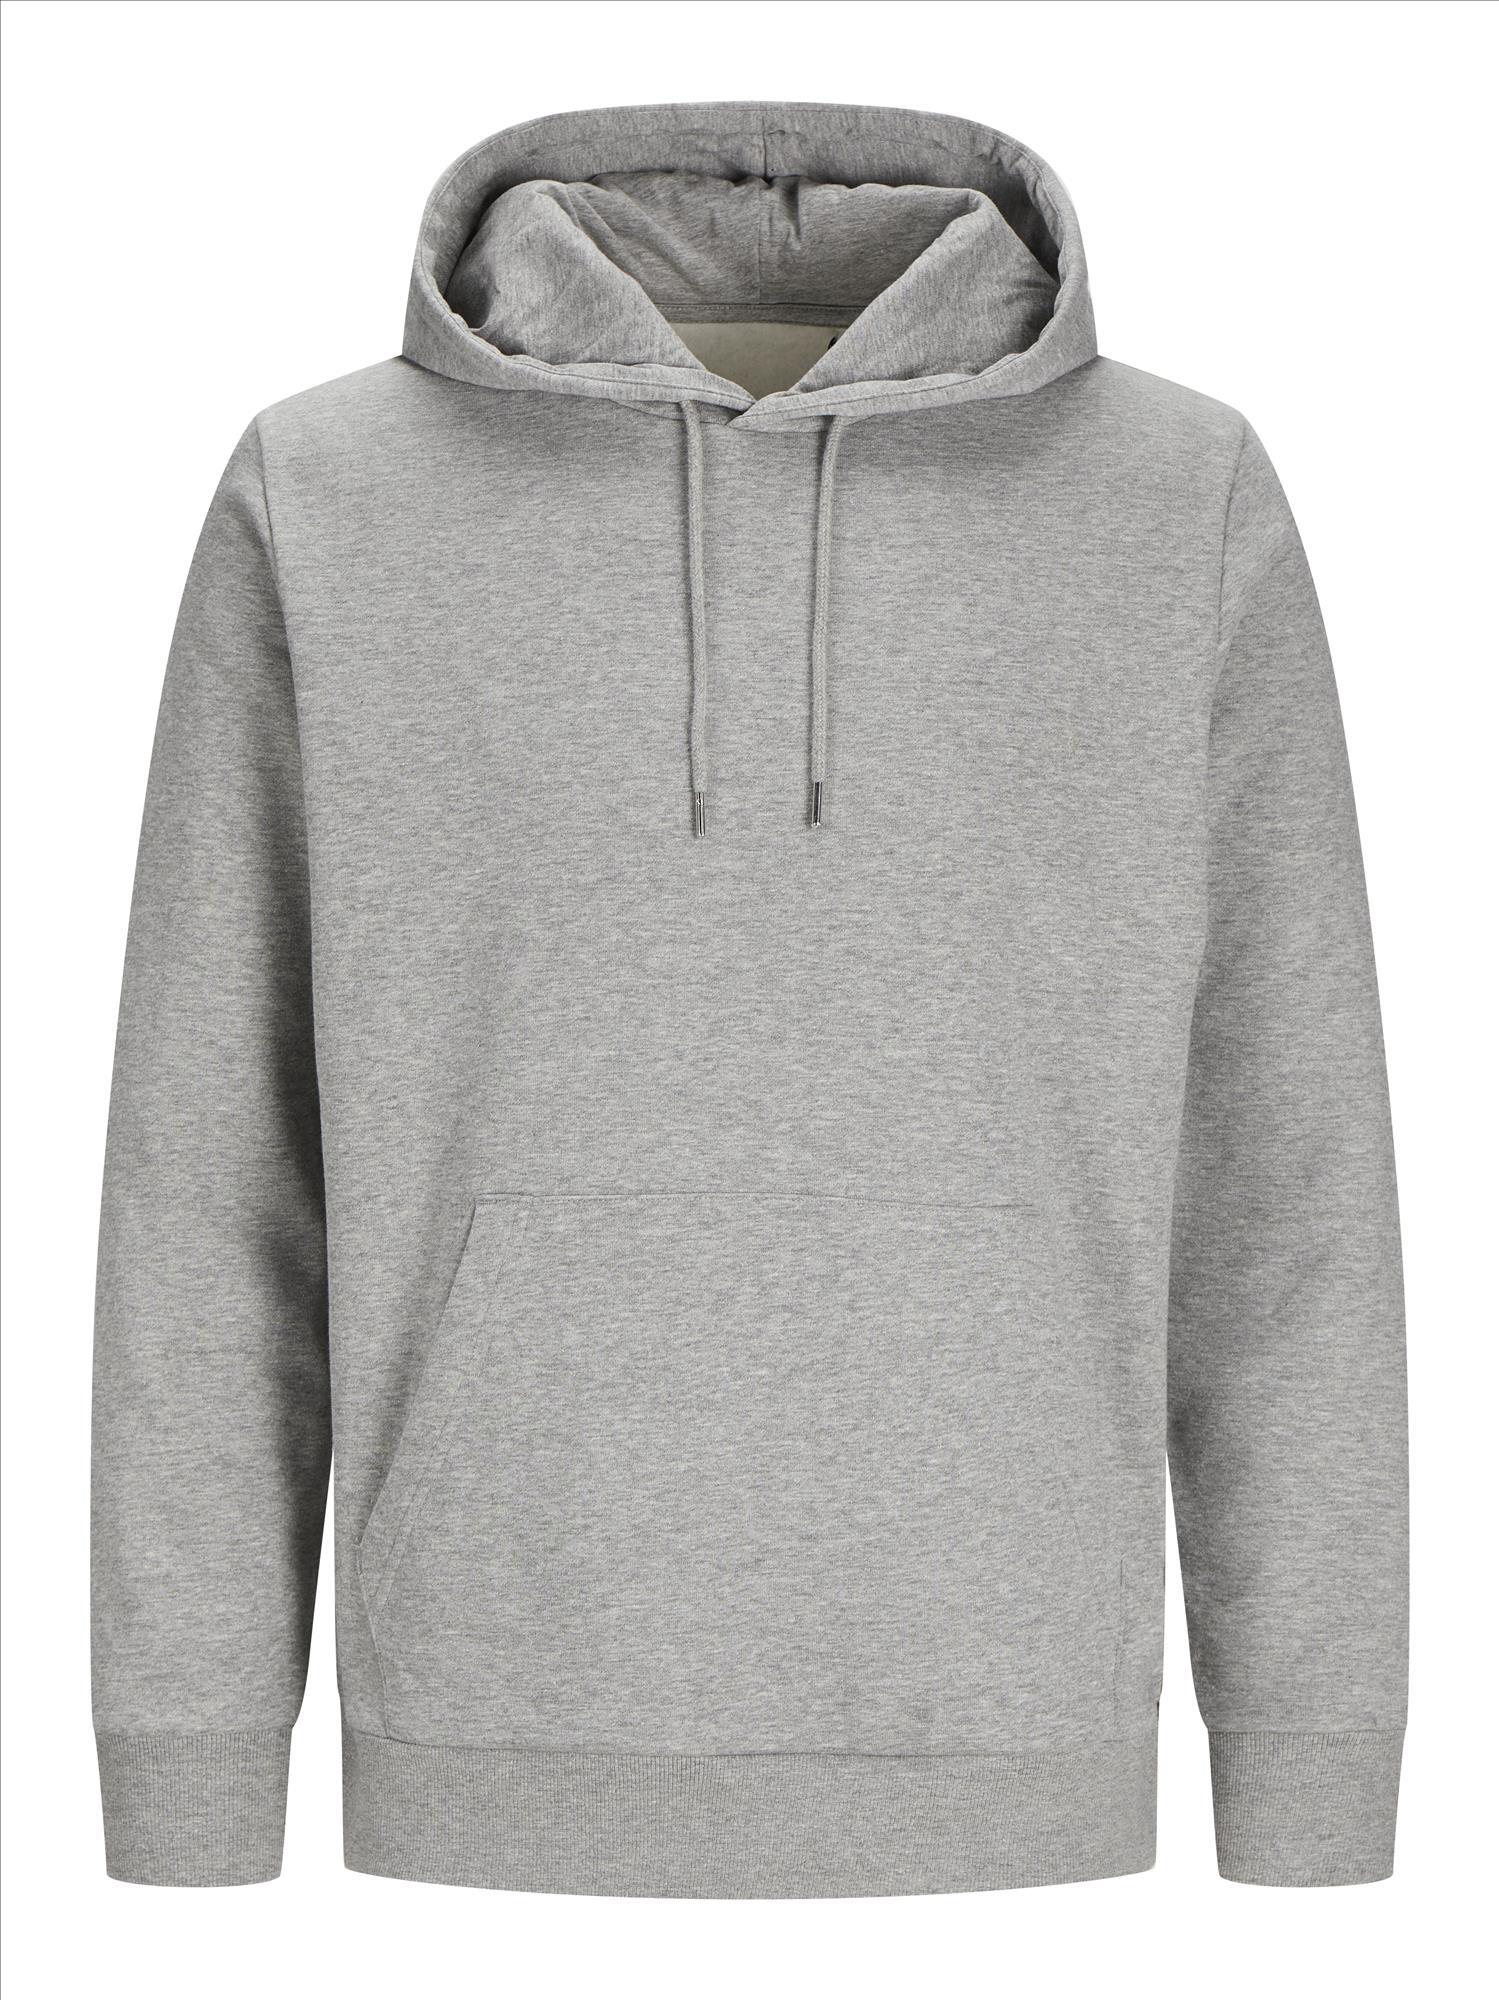 Hoodie light grey melange JACK & JONES Basic Hood Sweat hoodies bedrukbaar